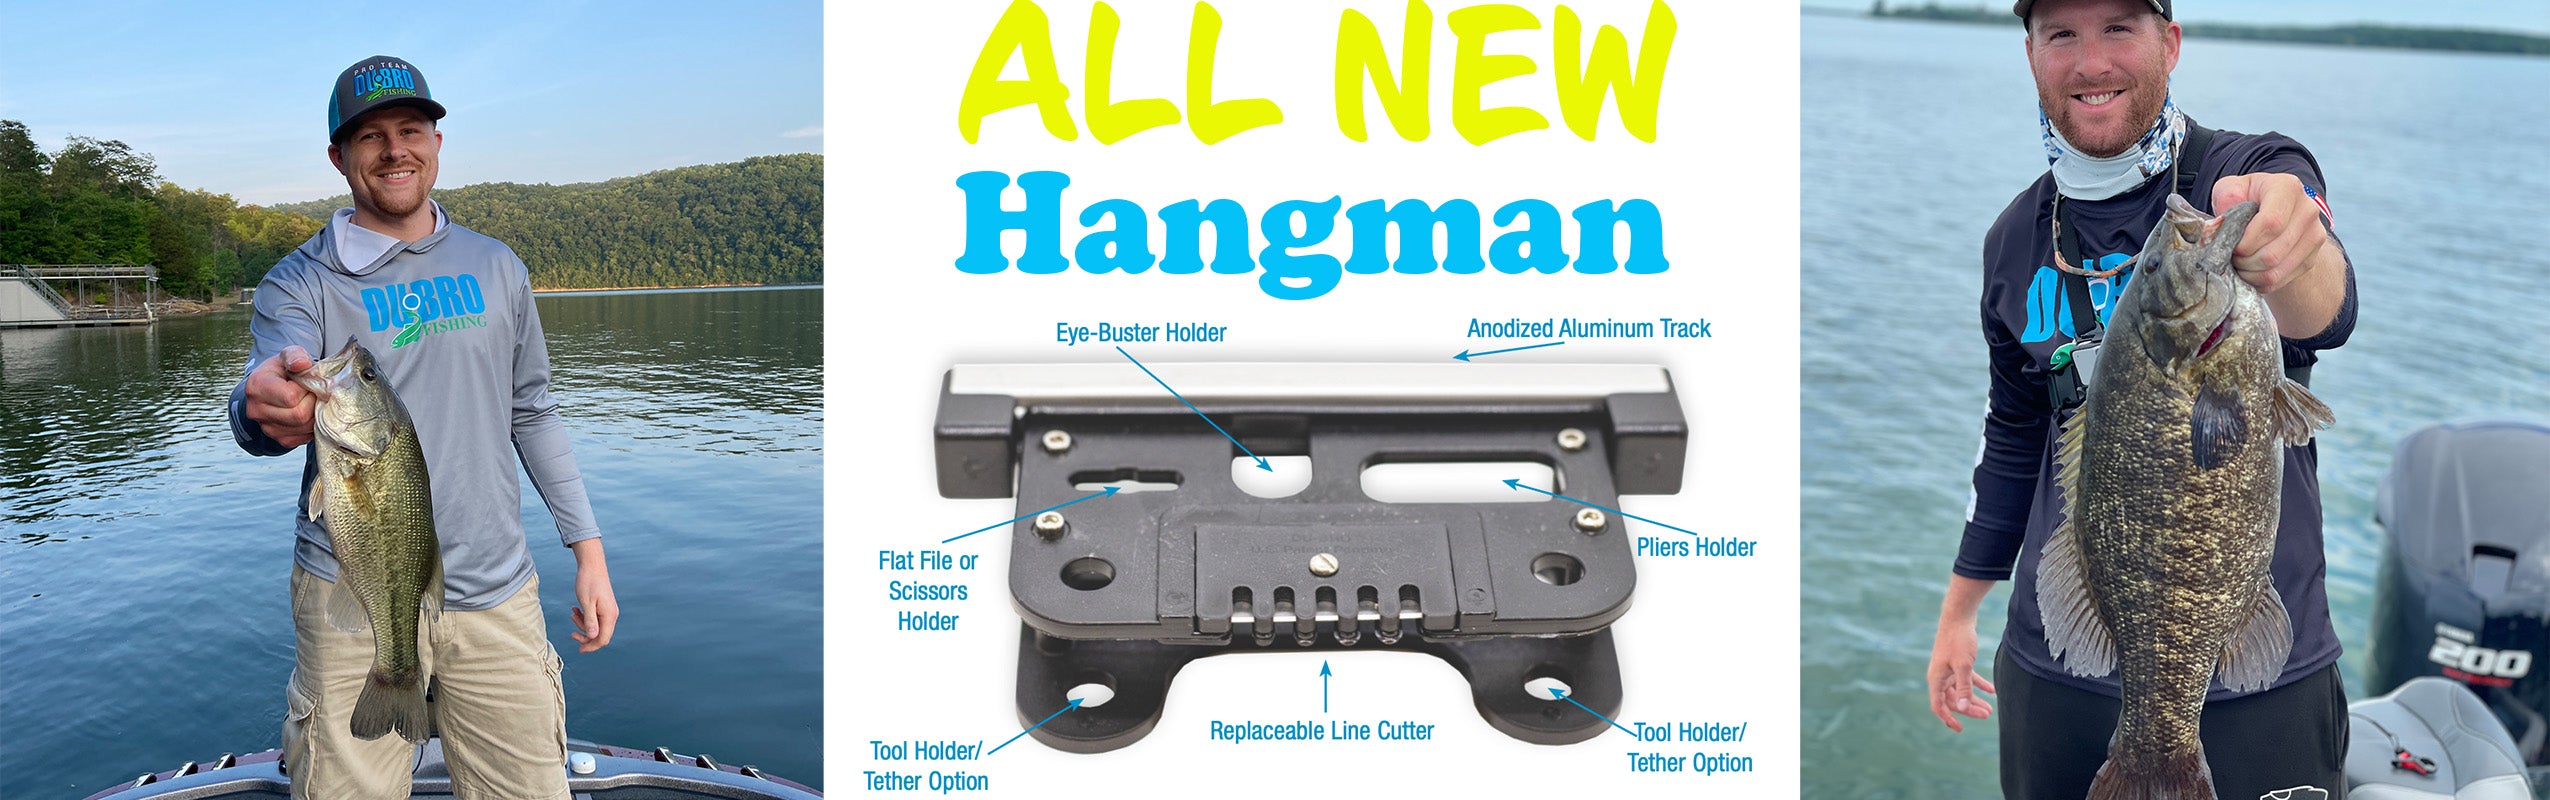 ALL NEW Hangman Tool Holder/Line Cutter 